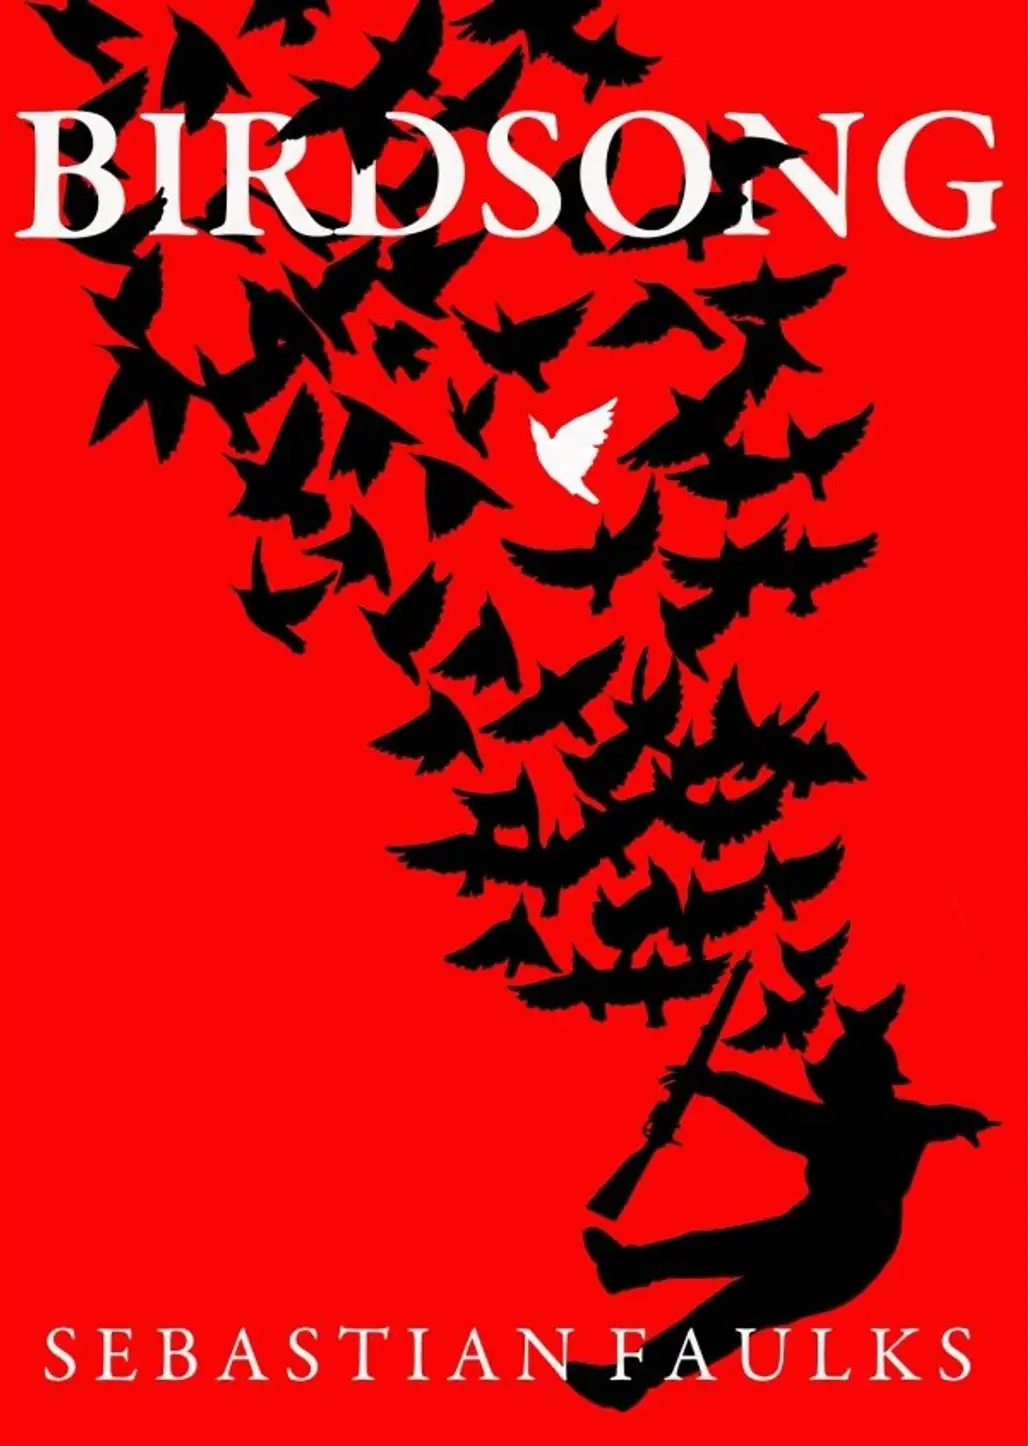 Birdsong by Sebastian Faulks (1993)